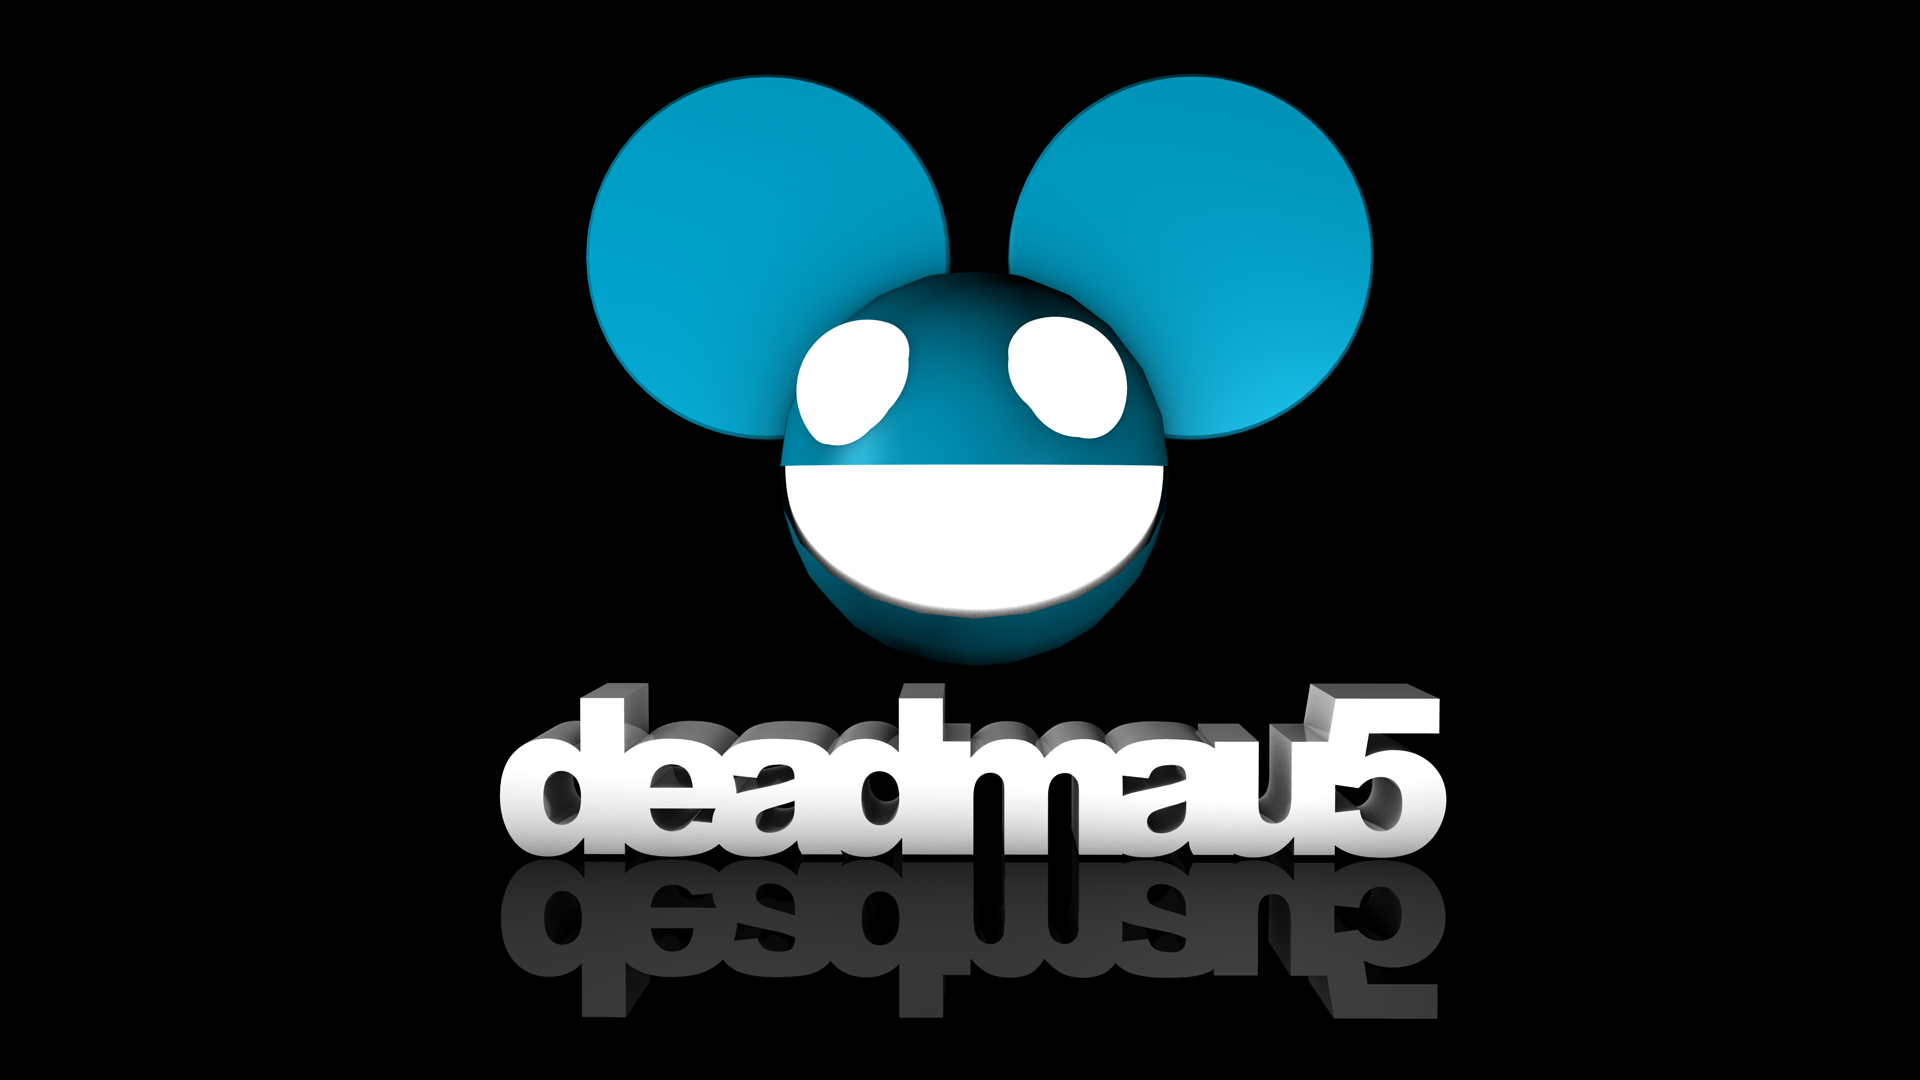 Deadmau5 Logos